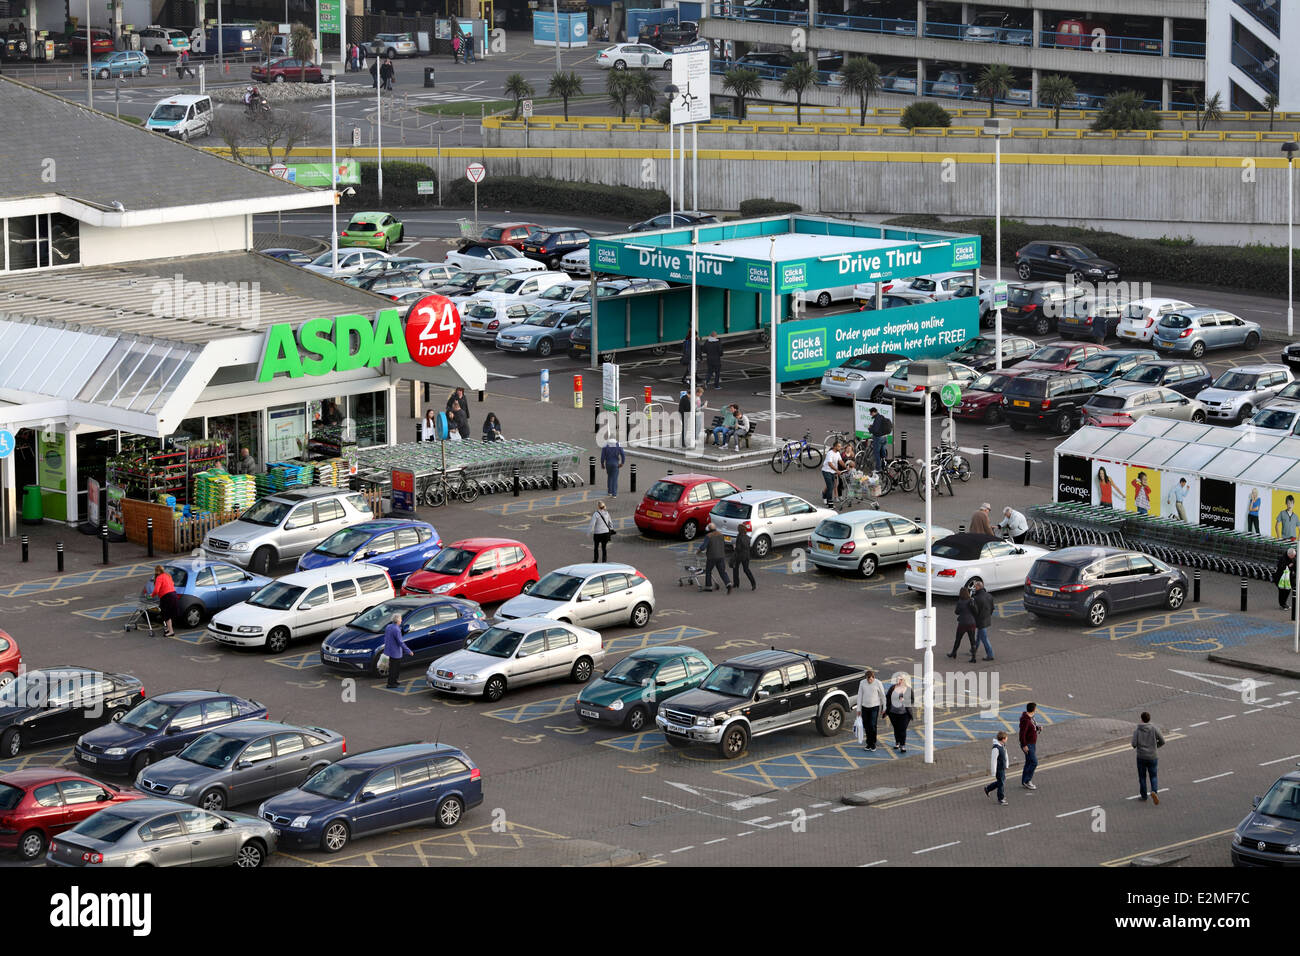 La entrada al supermercado Asda, Brighton Marina. "Haga clic en Drive Thru y recoger" ubicado a la derecha. Foto de stock